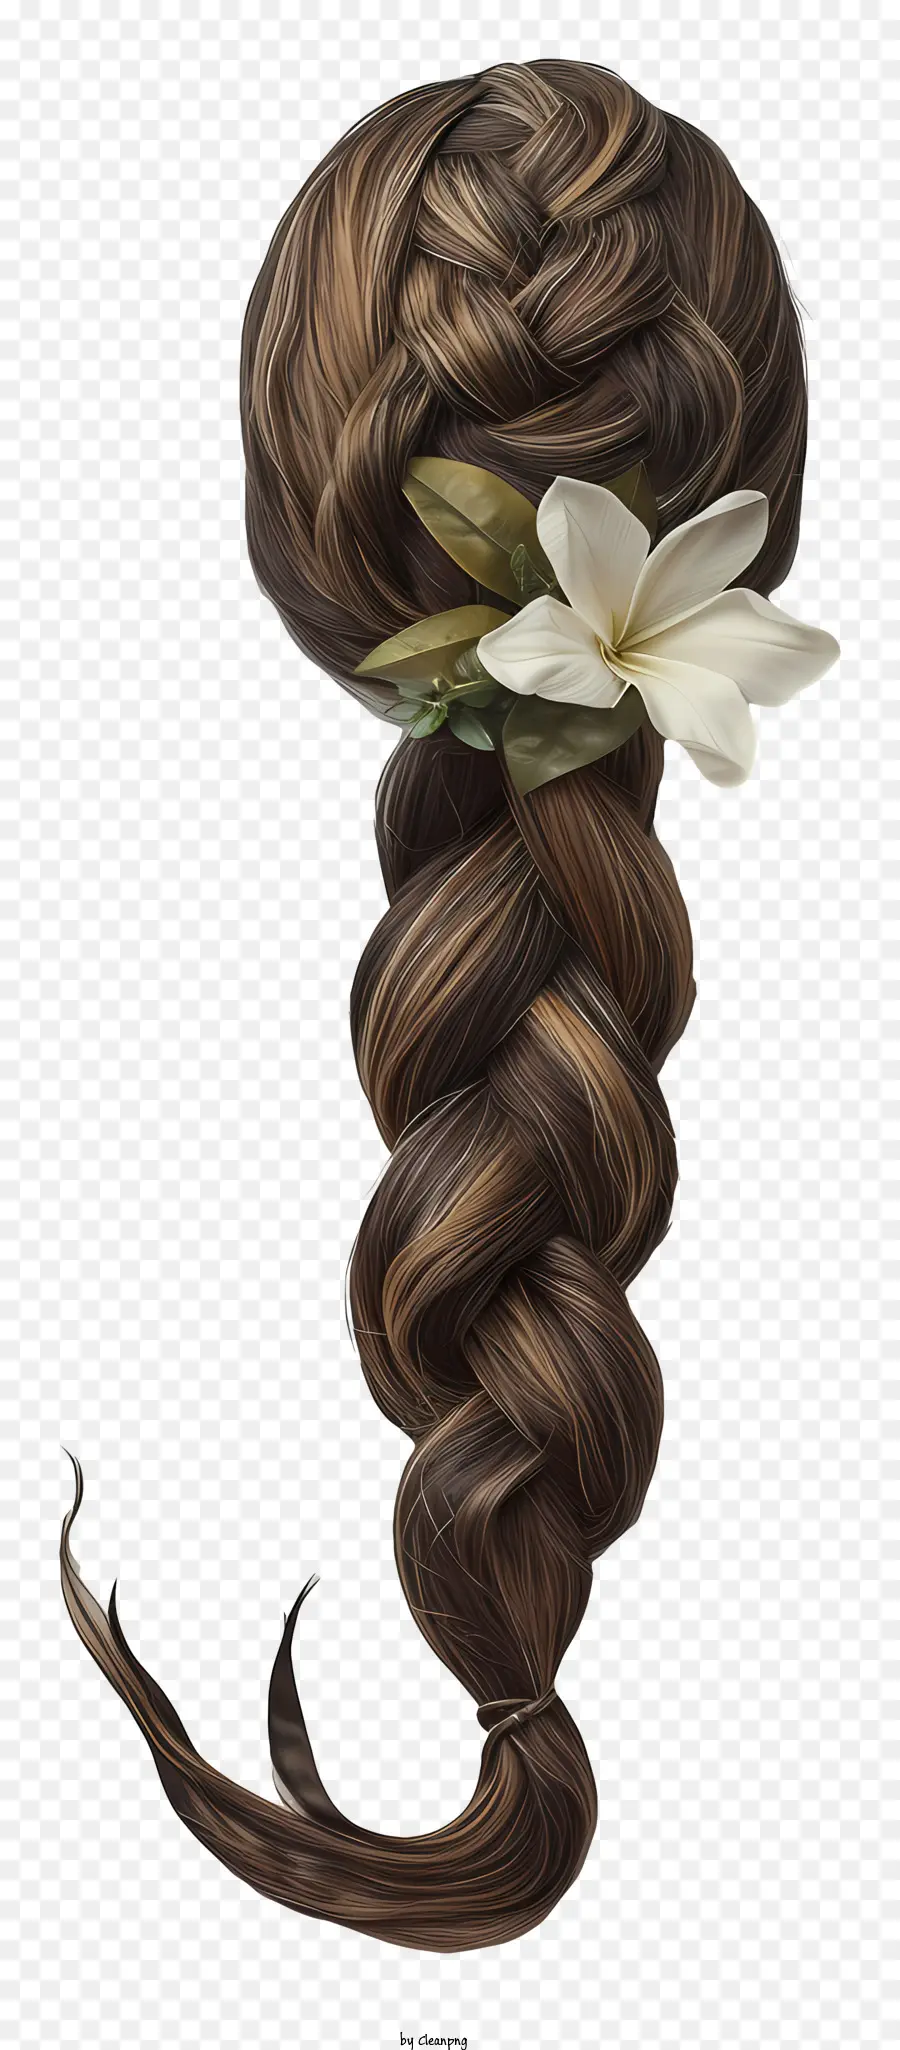 hoa trắng - Mái tóc bện của người phụ nữ với vật trang trí hoa trắng